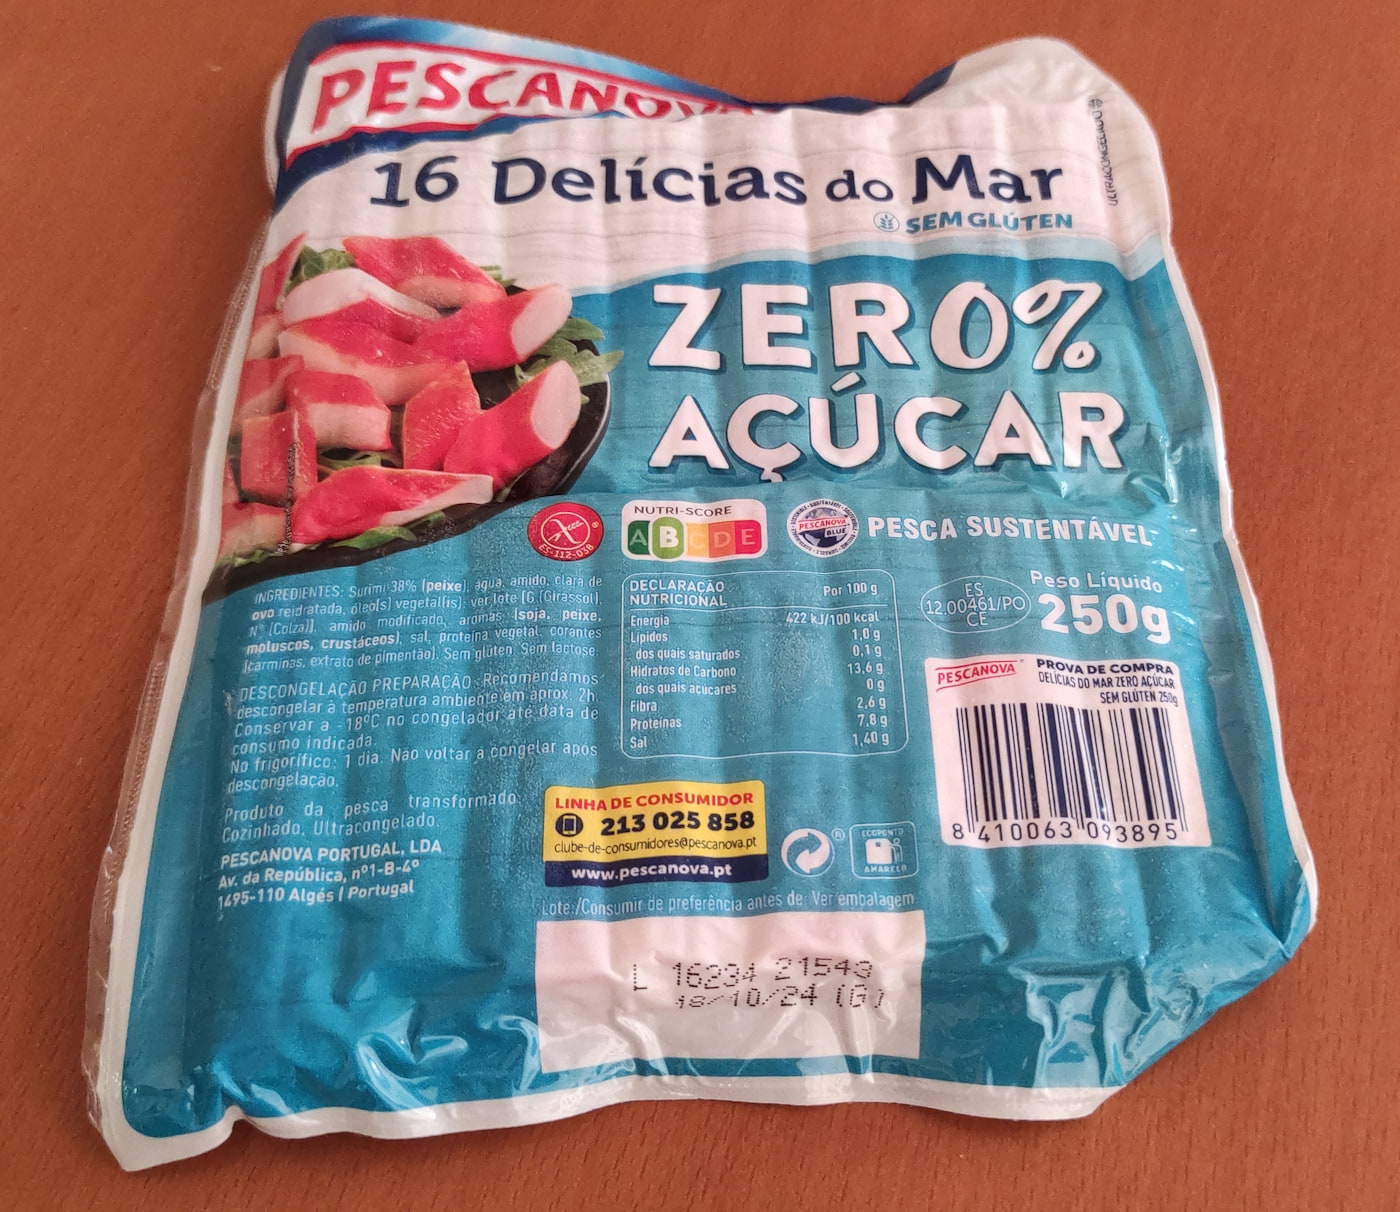 Delícias do Mar ZERO% Açúcar Pescanova